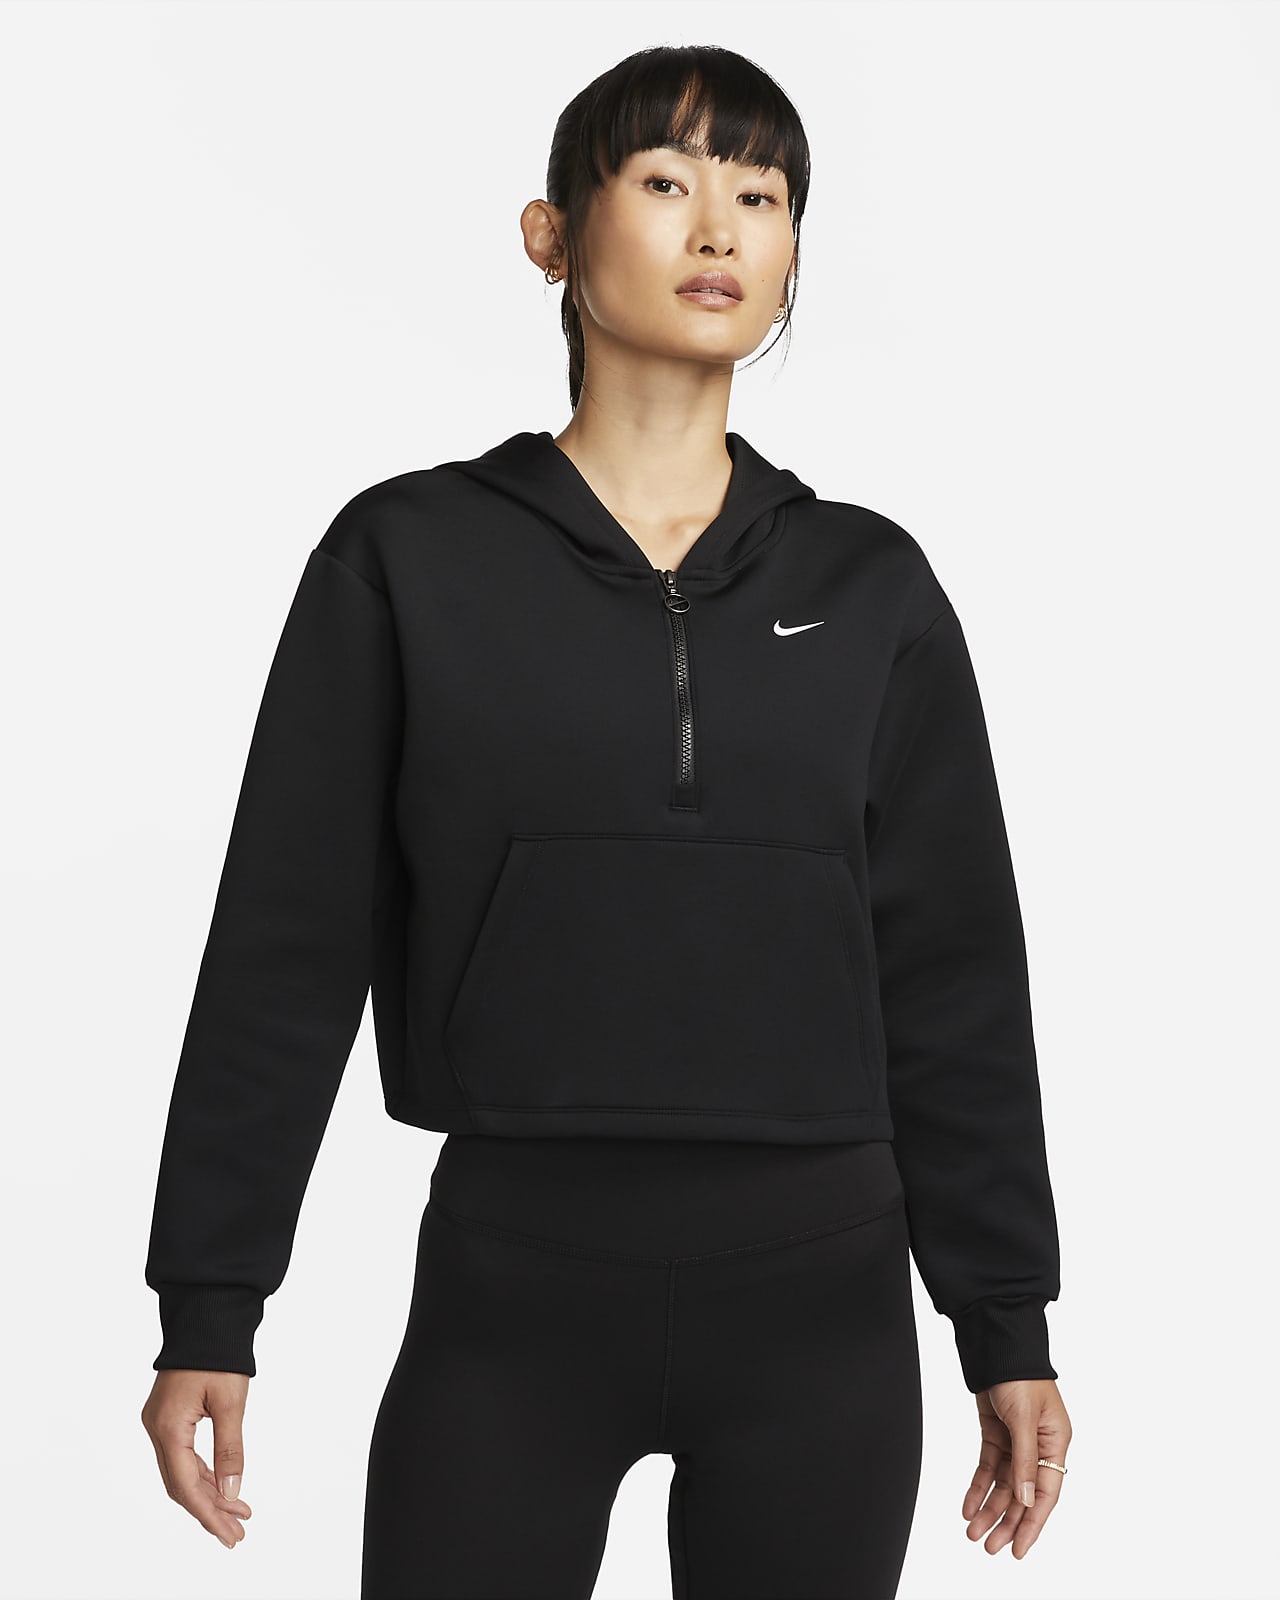 Nike Dri-FIT Women's Graphic 1/2-Zip Training Hoodie